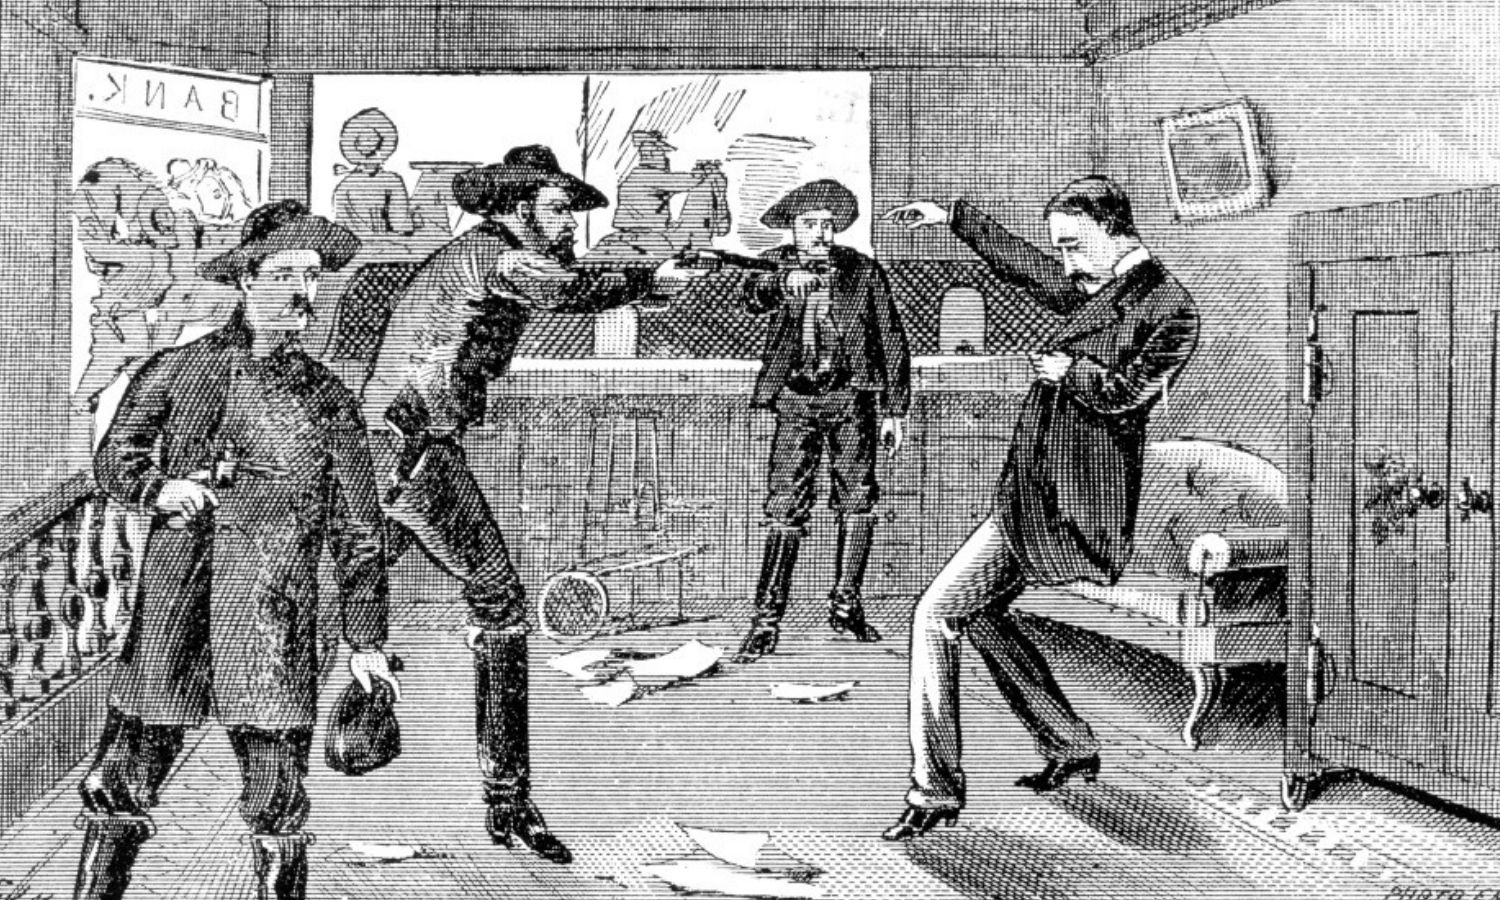 OTD in 1871: Jesse James